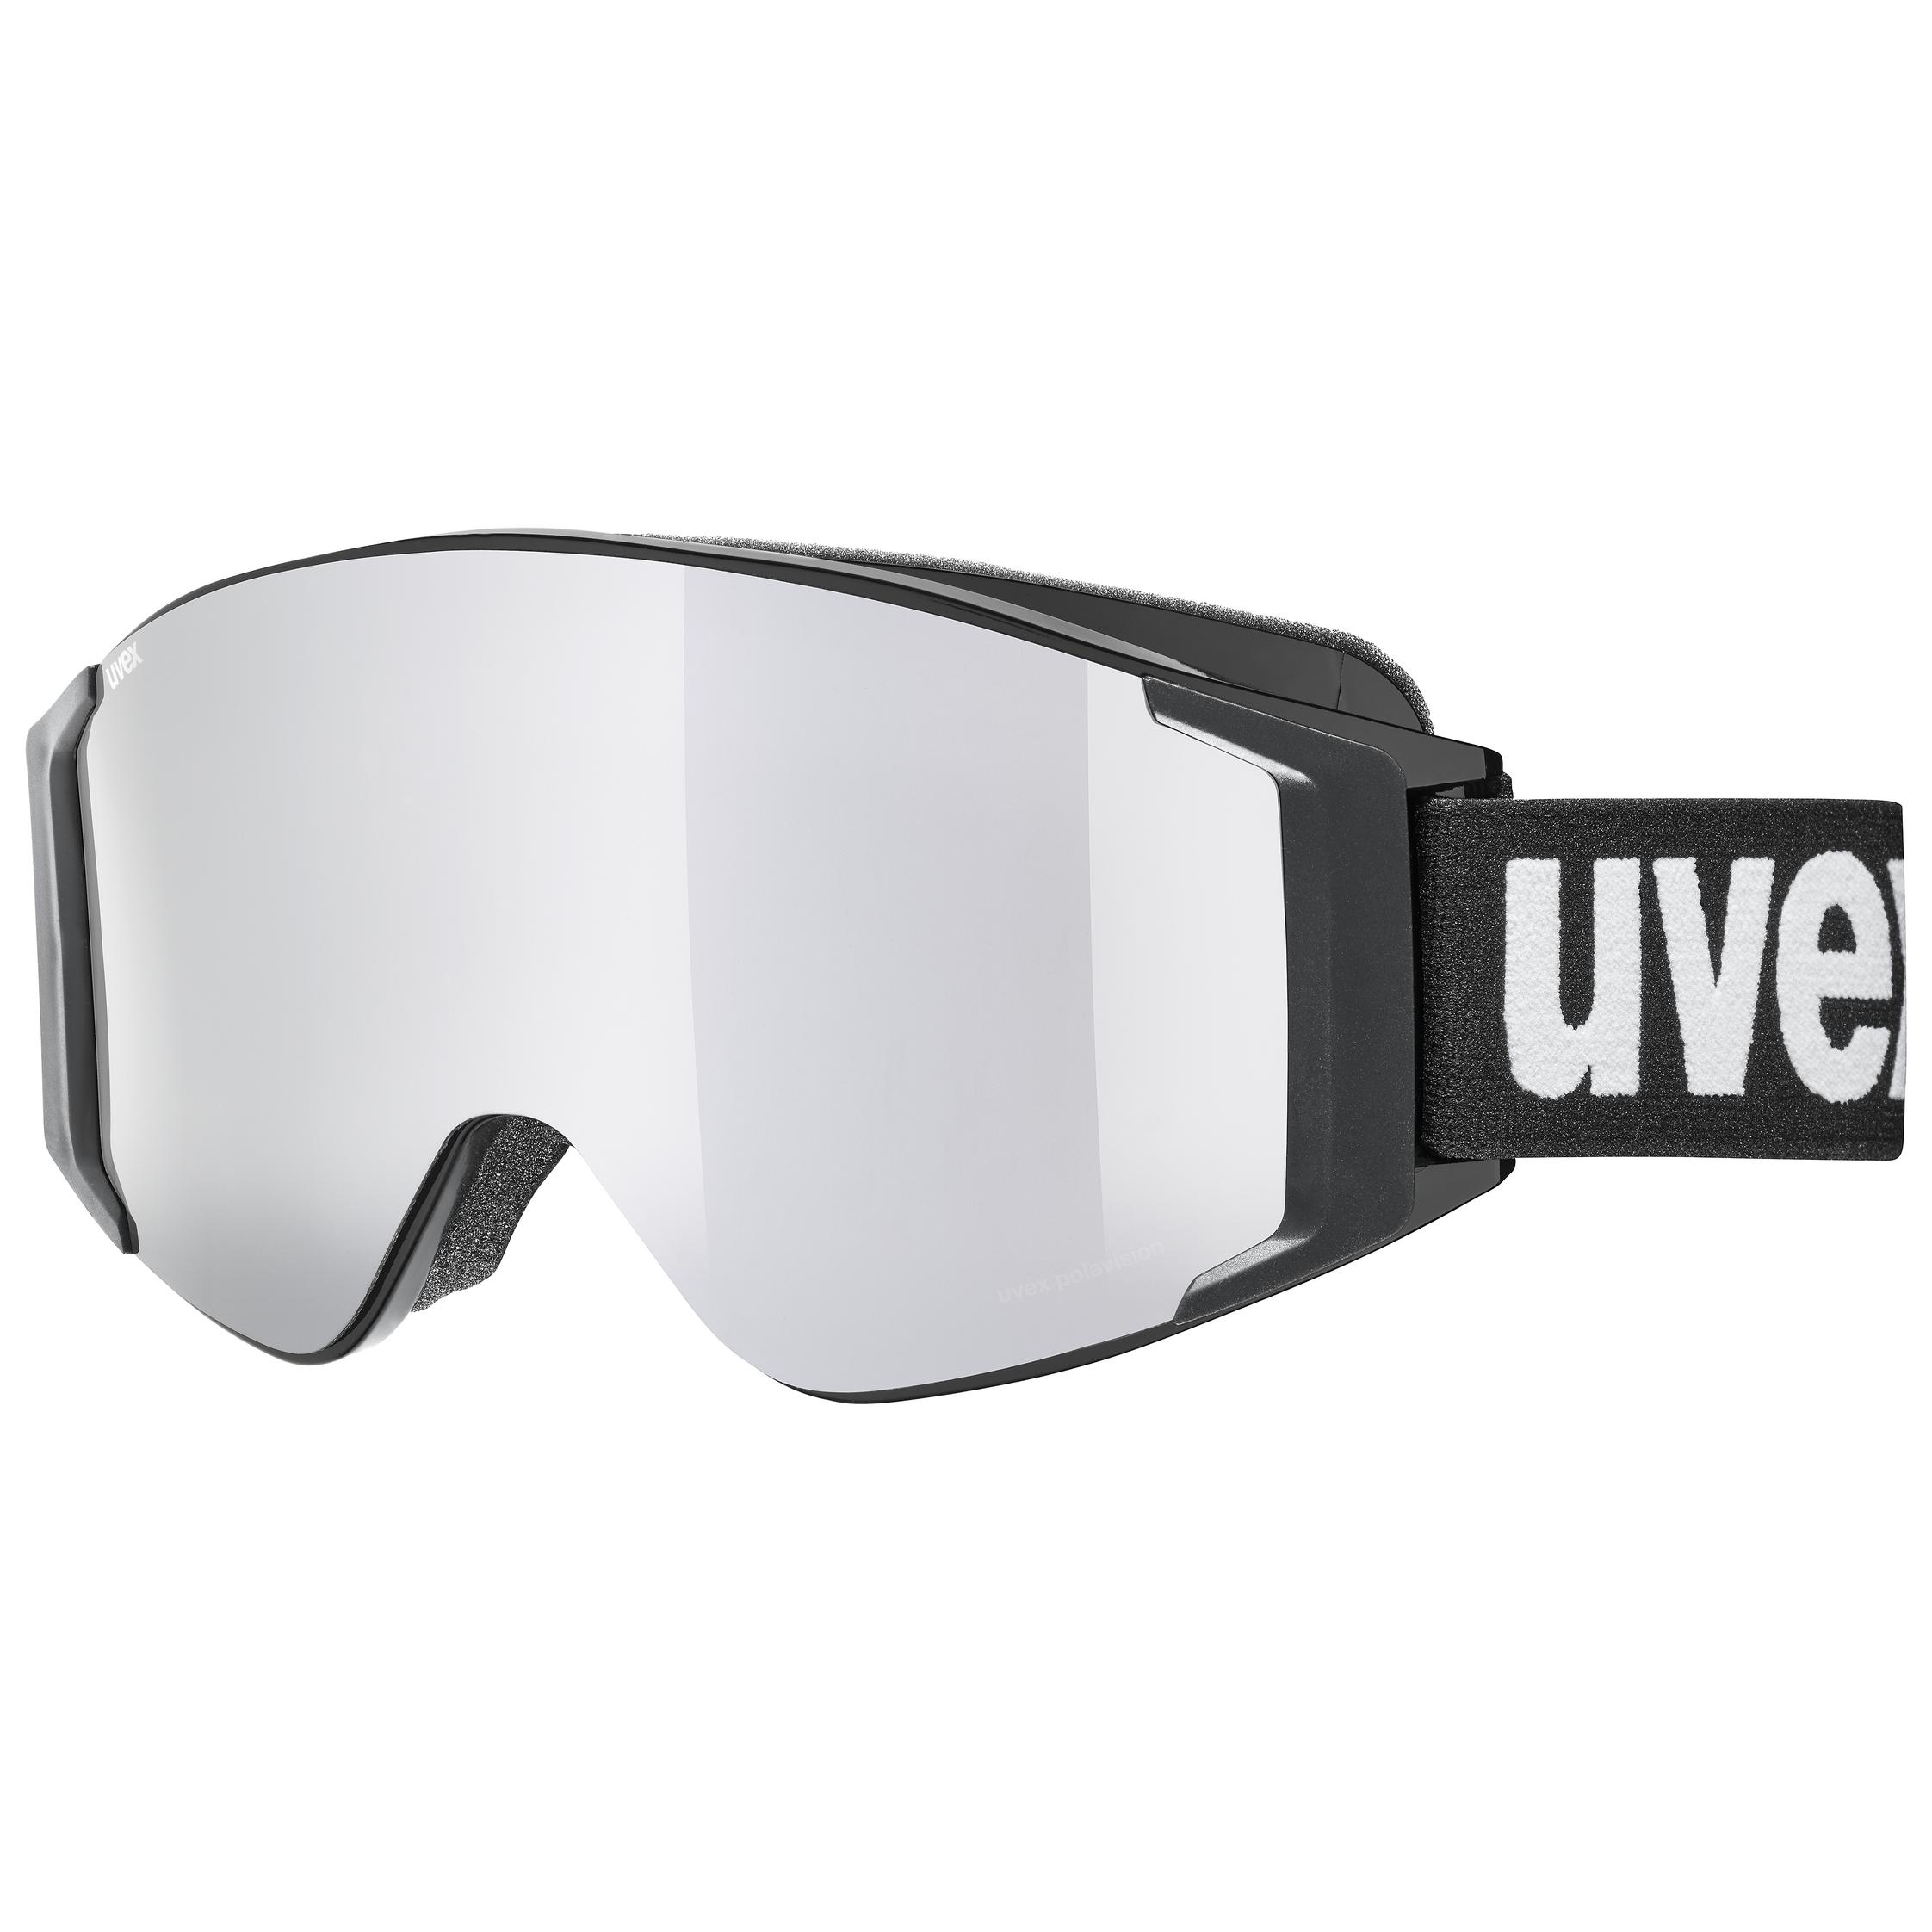 Maschera sci UVEX modello g.gl 300 take off ski goggles